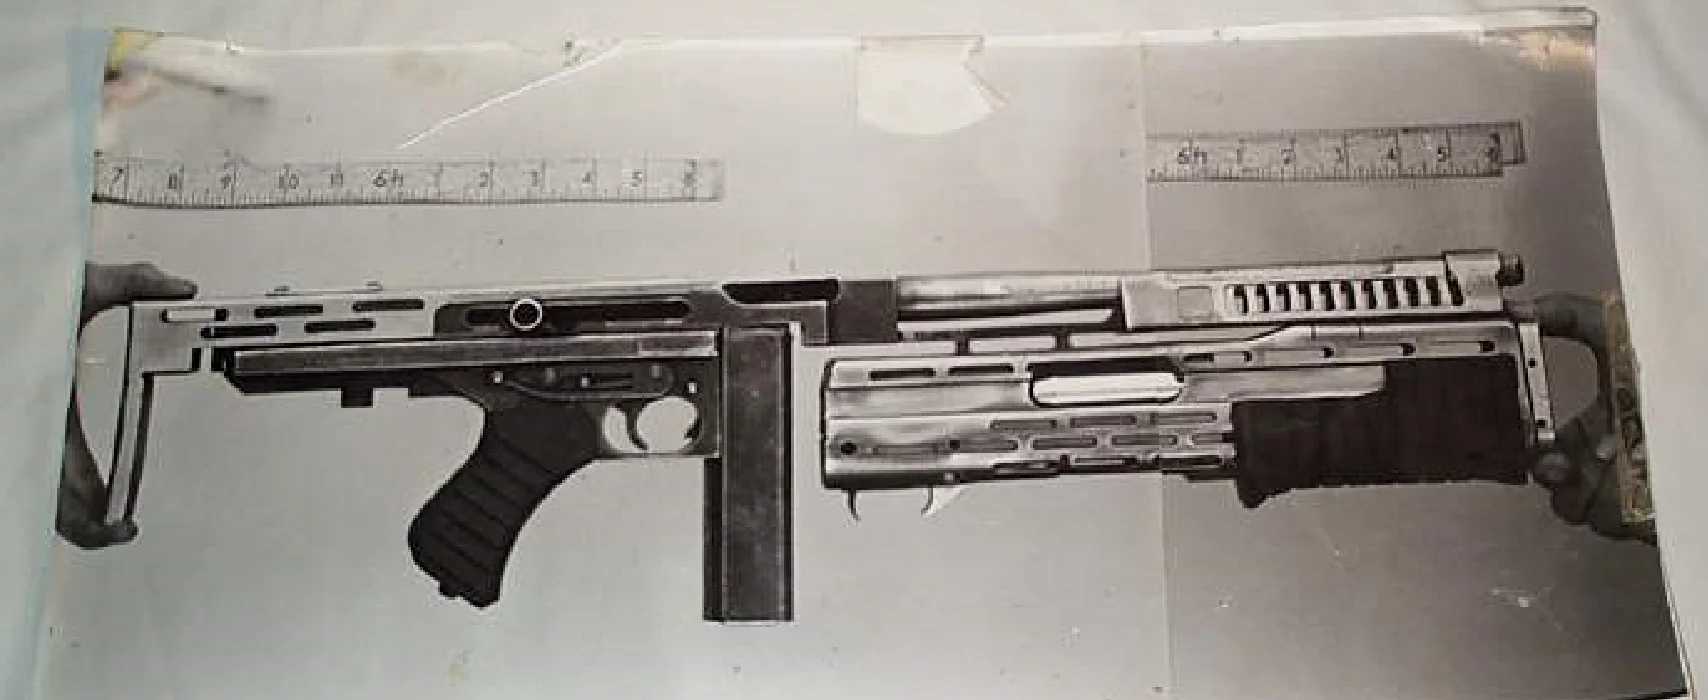 M41A道具内构，汤姆逊M1冲锋枪和SPAS12霰弹枪分别组成了脉冲步枪的主枪体与榴弹发射器的部分